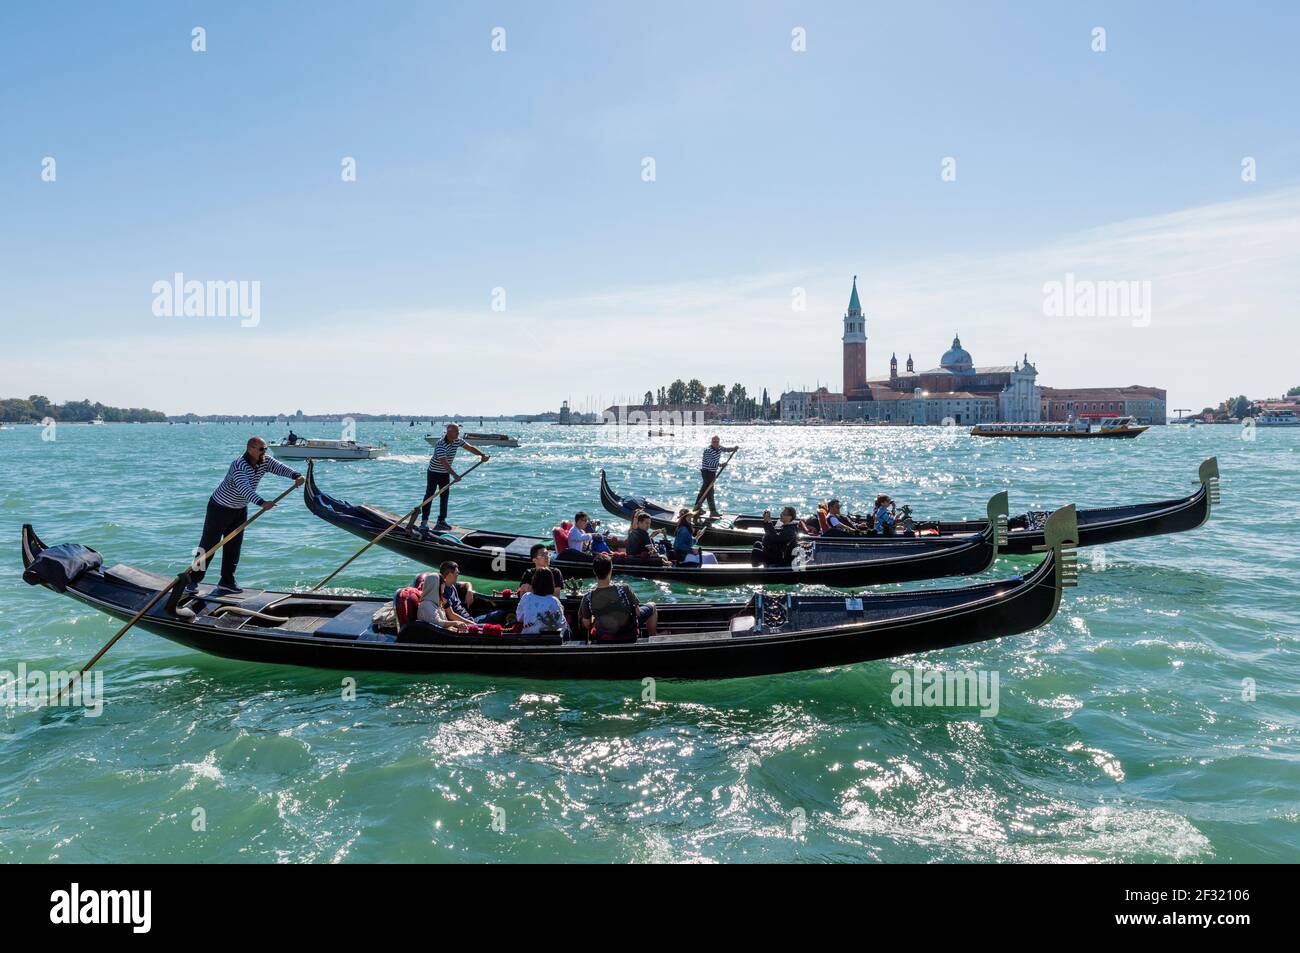 Italie, Venise, télécabines ferrant des touristes sur des gondoles sur le canal de San Marco avec San Giorgio Maggiore en arrière-plan Banque D'Images